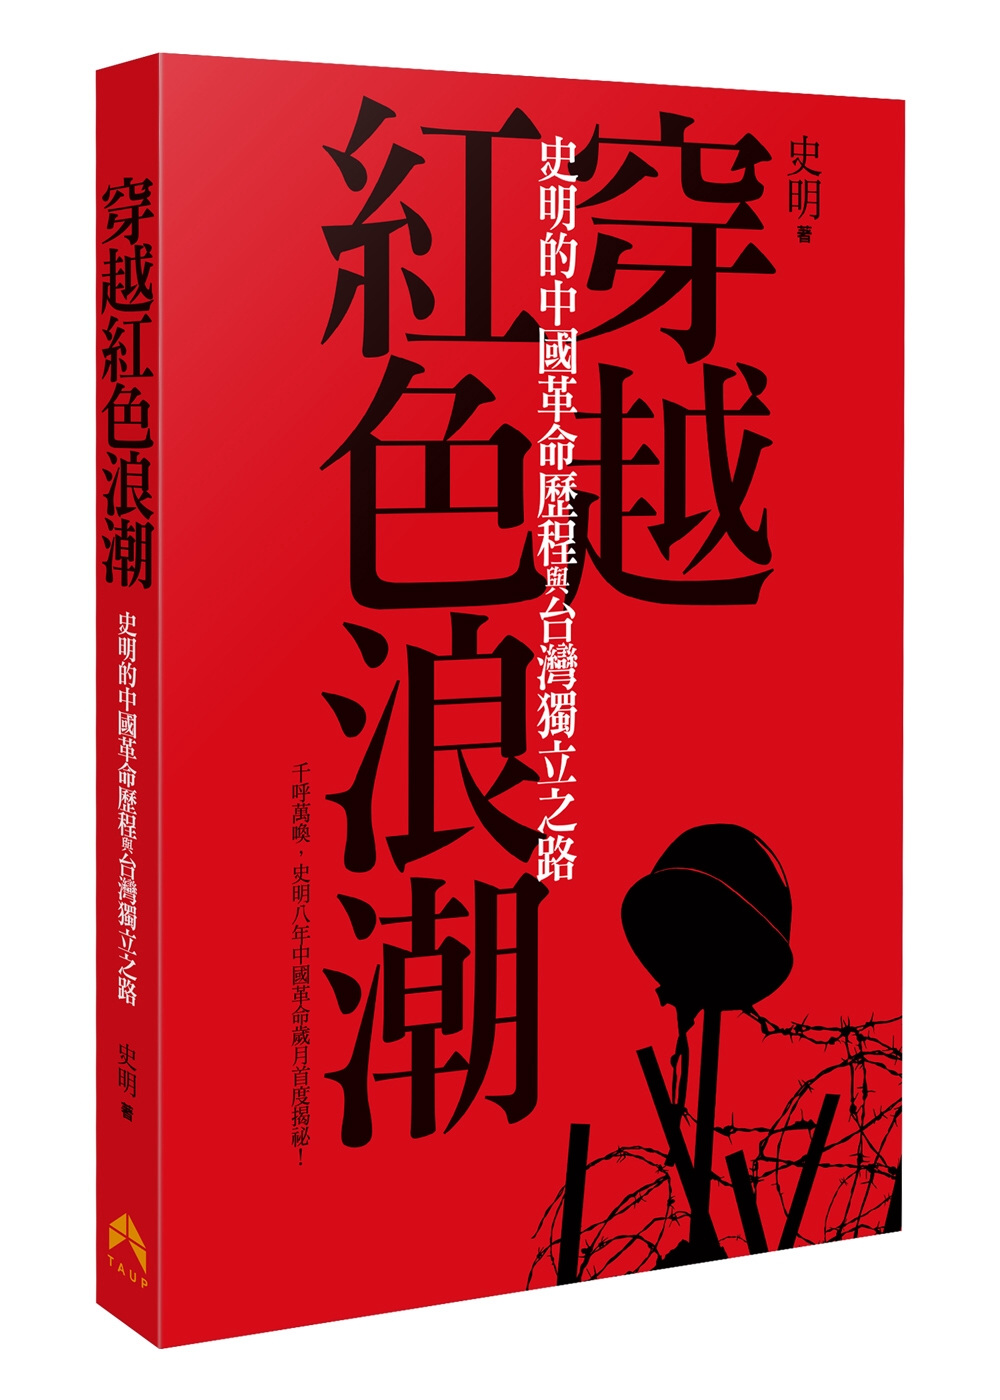 穿越紅色浪潮:史明的中國革命歷程與臺灣獨立之路